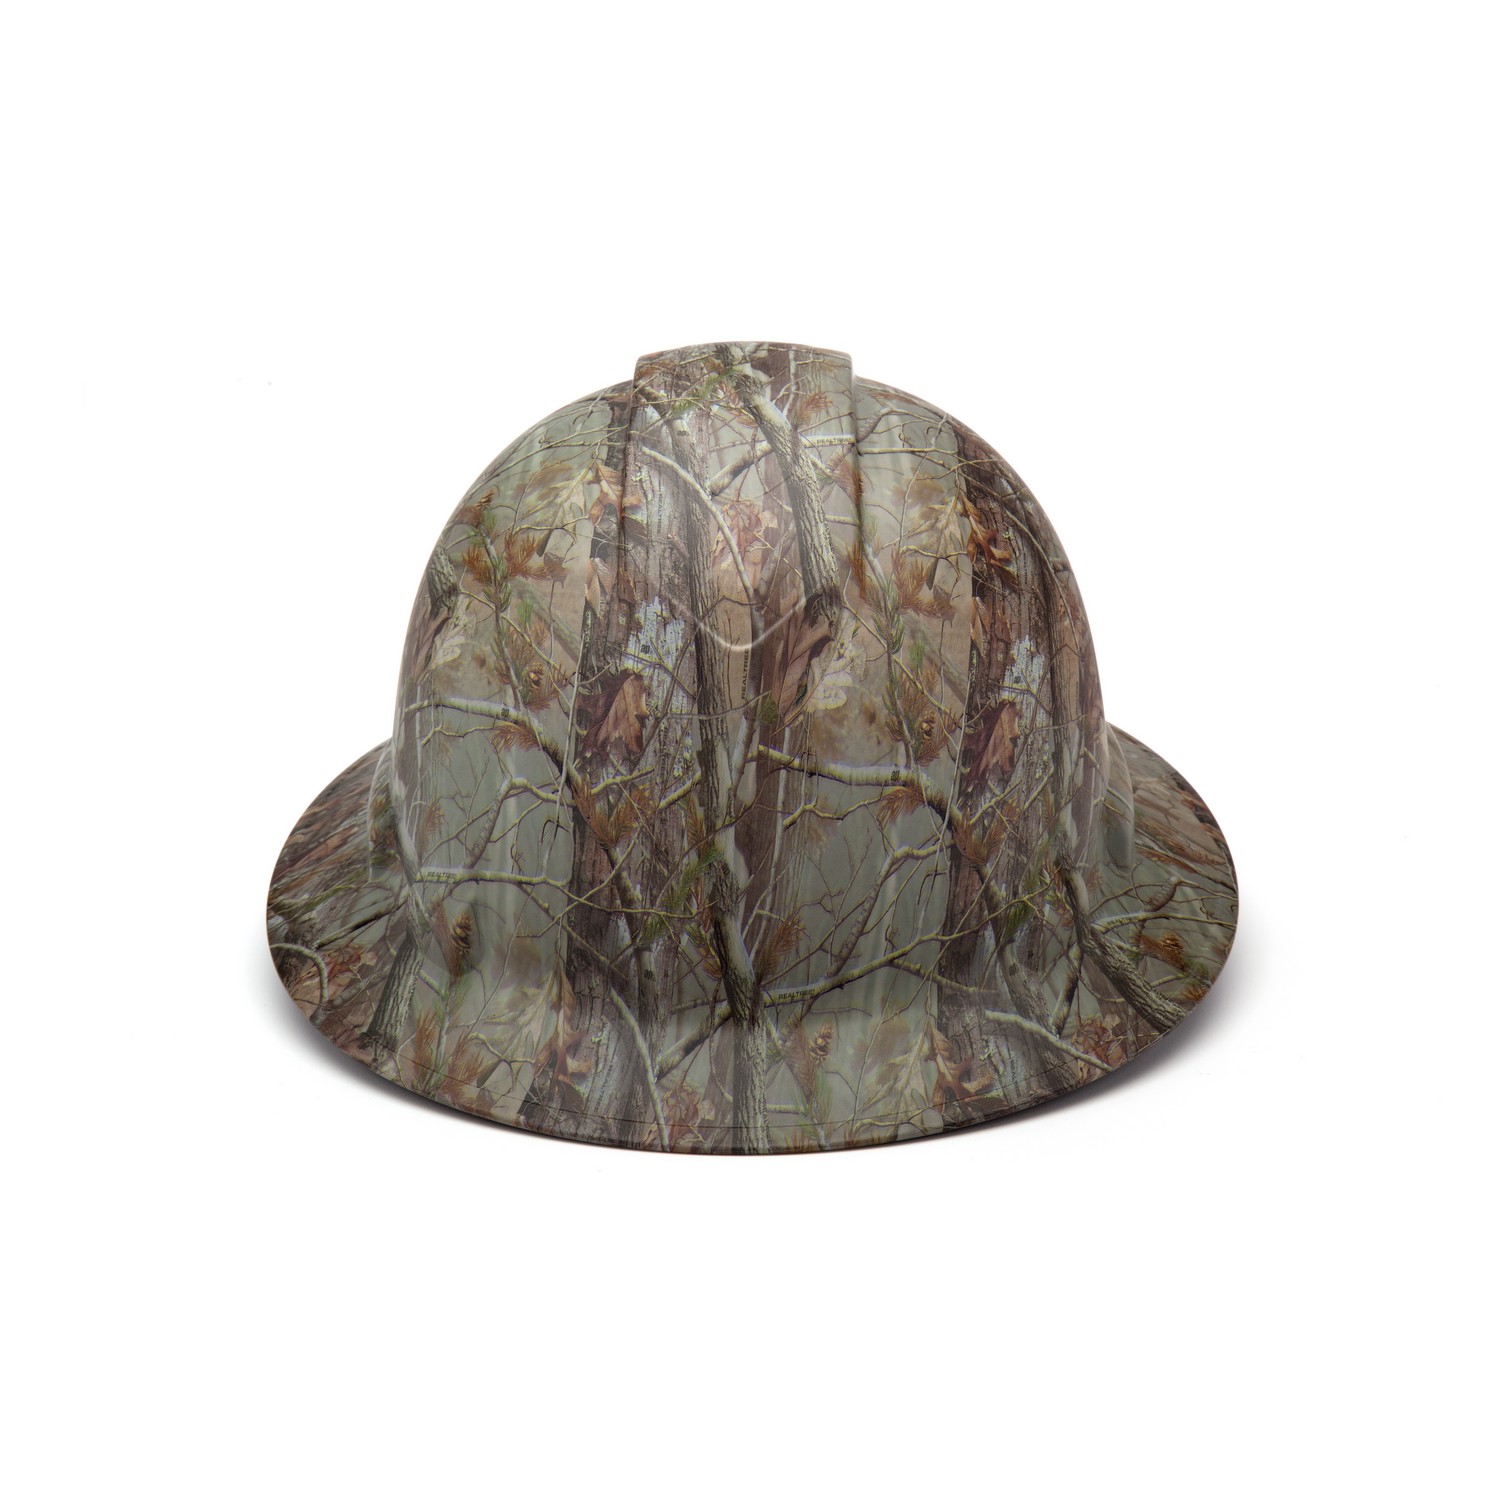 Pyramex Ridgeline Hard Hat Camouflage Pattern Full Brim Ratchet HP54119 